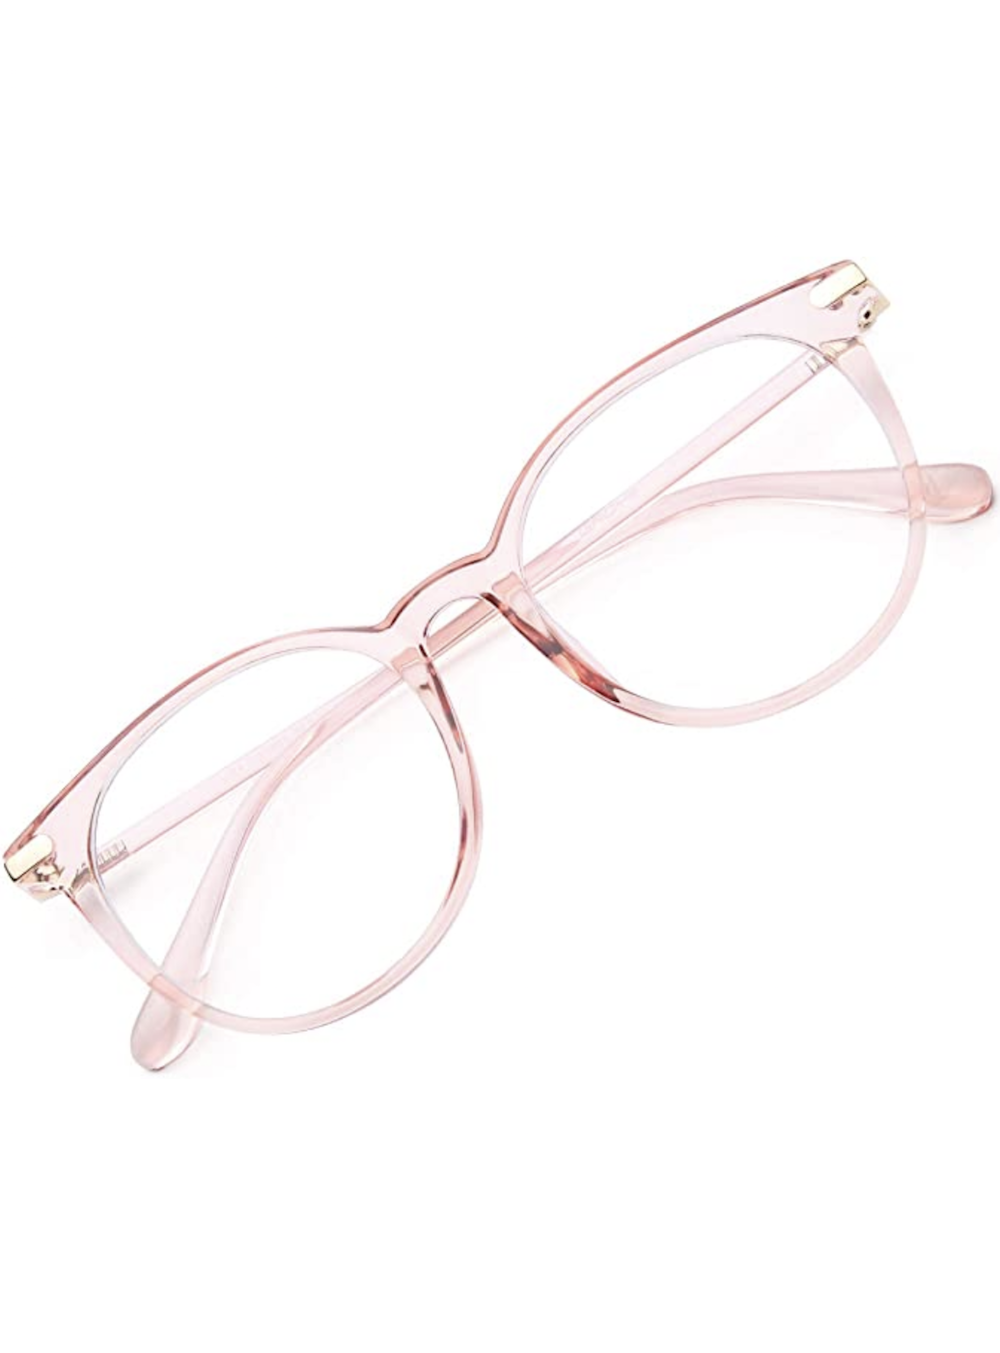 best-blue-light-glasses-to-prevent-eye-strain-2